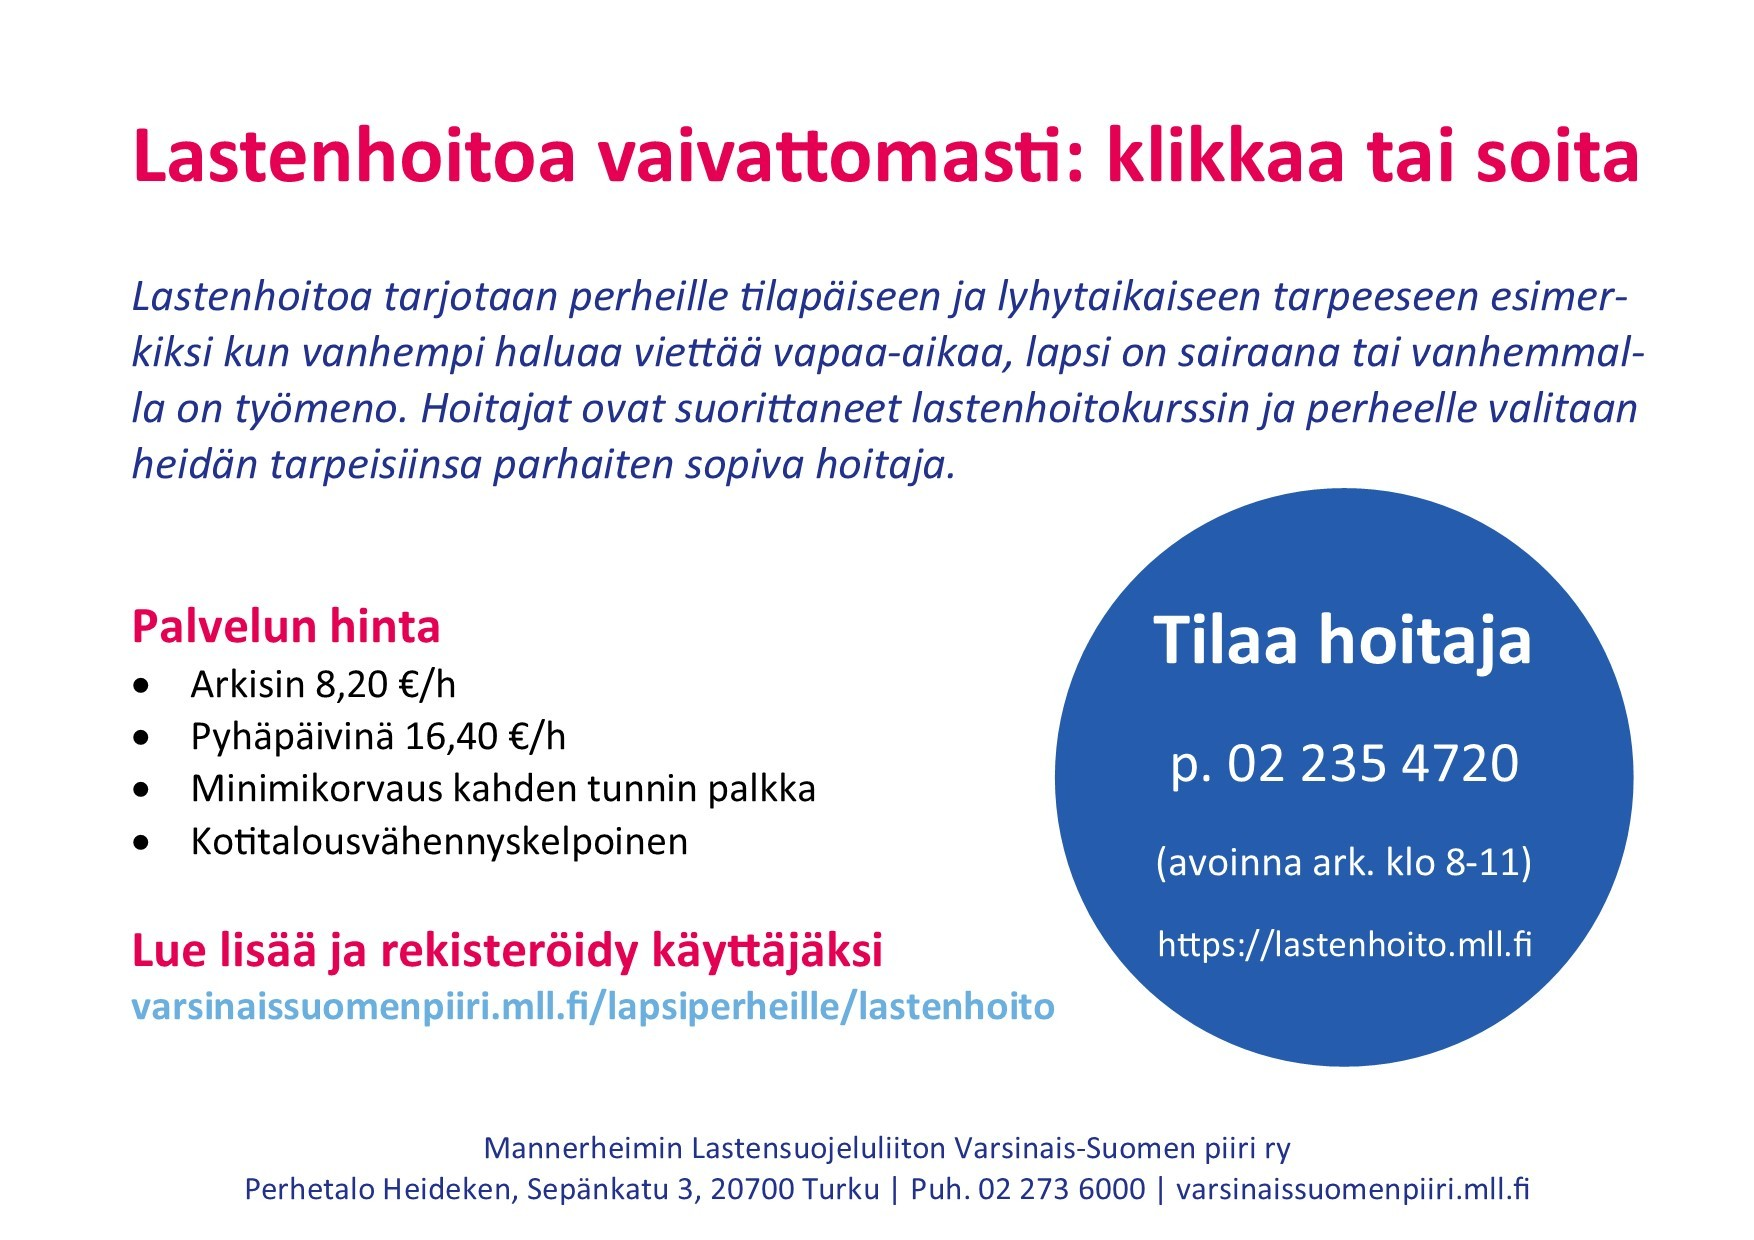 MLL:n Varsinais-Suomen piirin palvelut Tukioppilastoiminta Salossa tukioppilastoimintaa löytyy kaikista alueen kouluista.